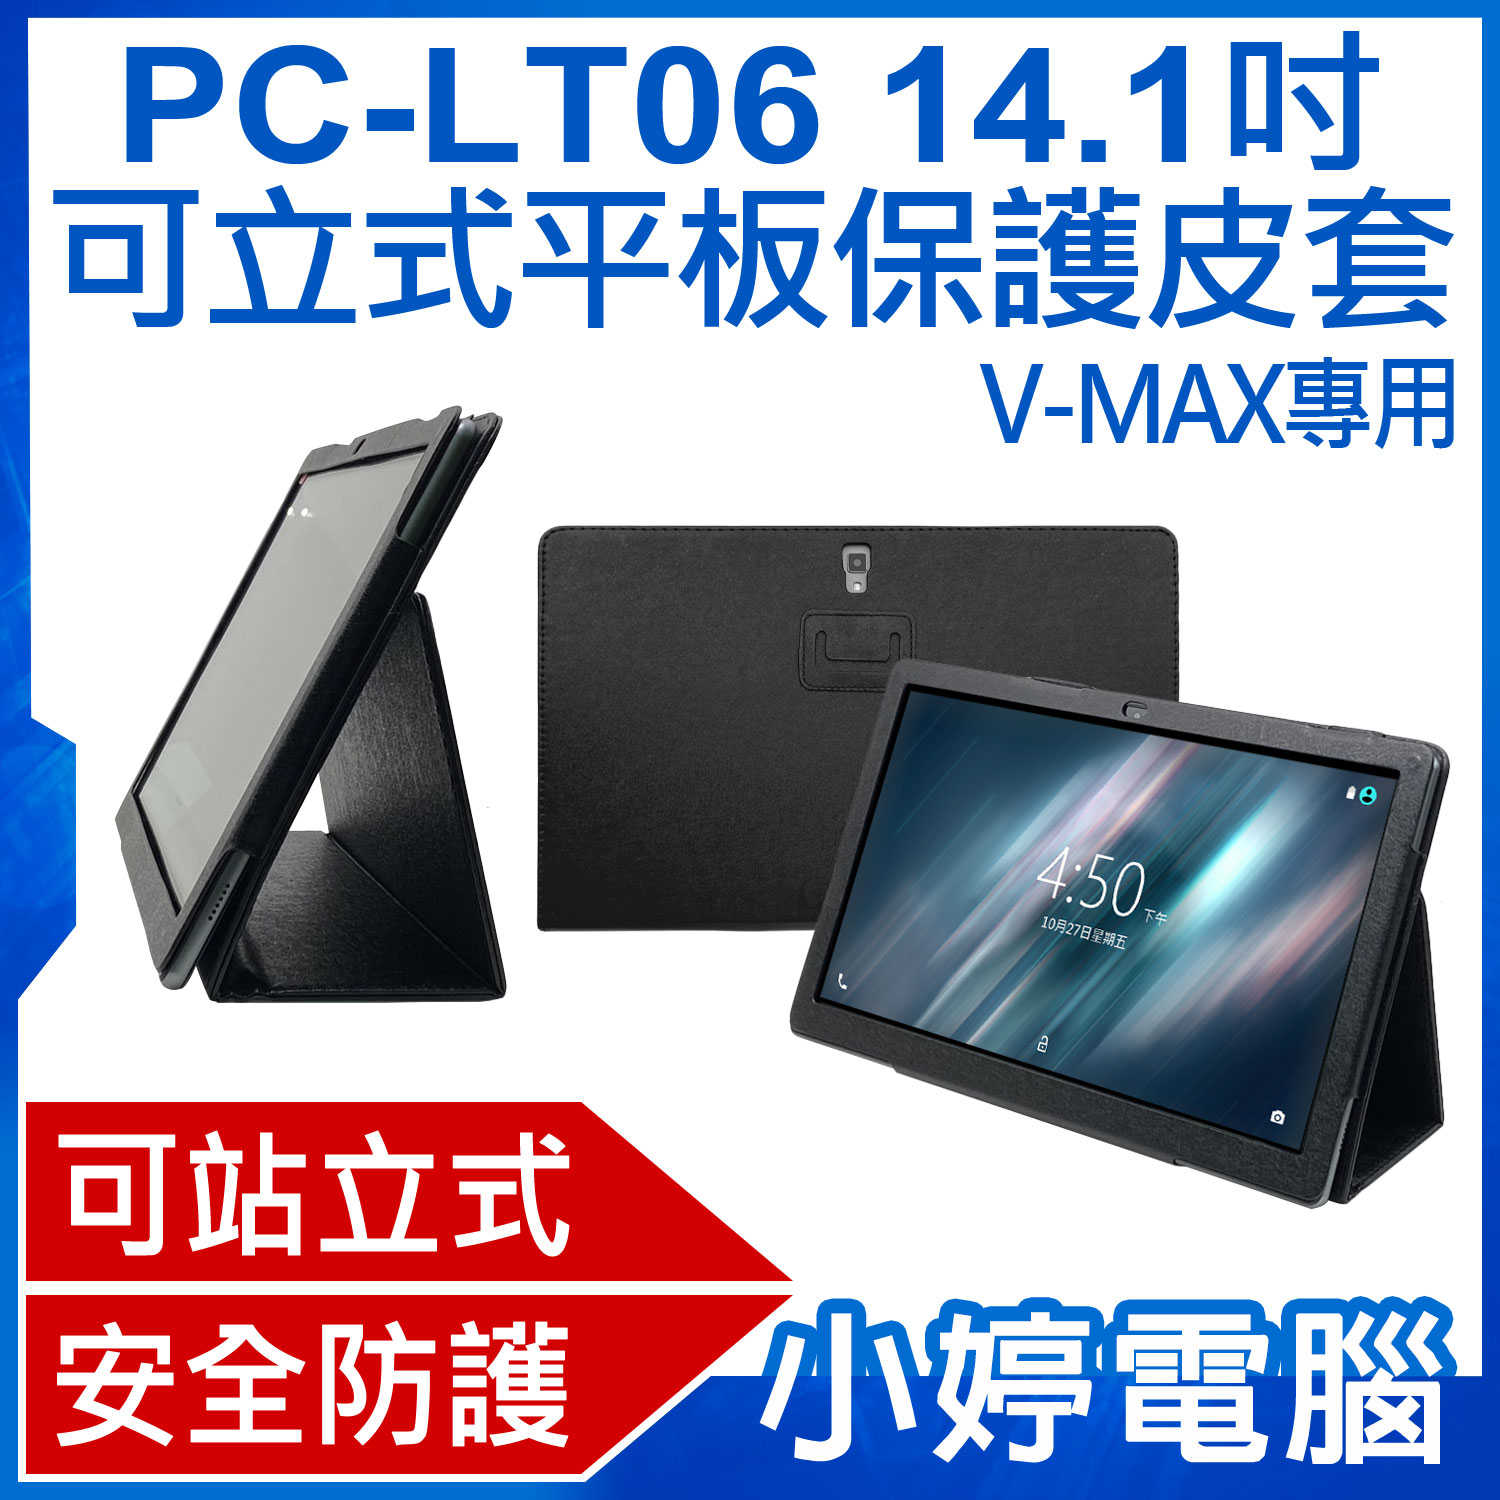 【小婷電腦】PC-LT06 14.1吋可立式平板保護皮套 V-MAX專用 三角立架 安全防護 防撞抗汙